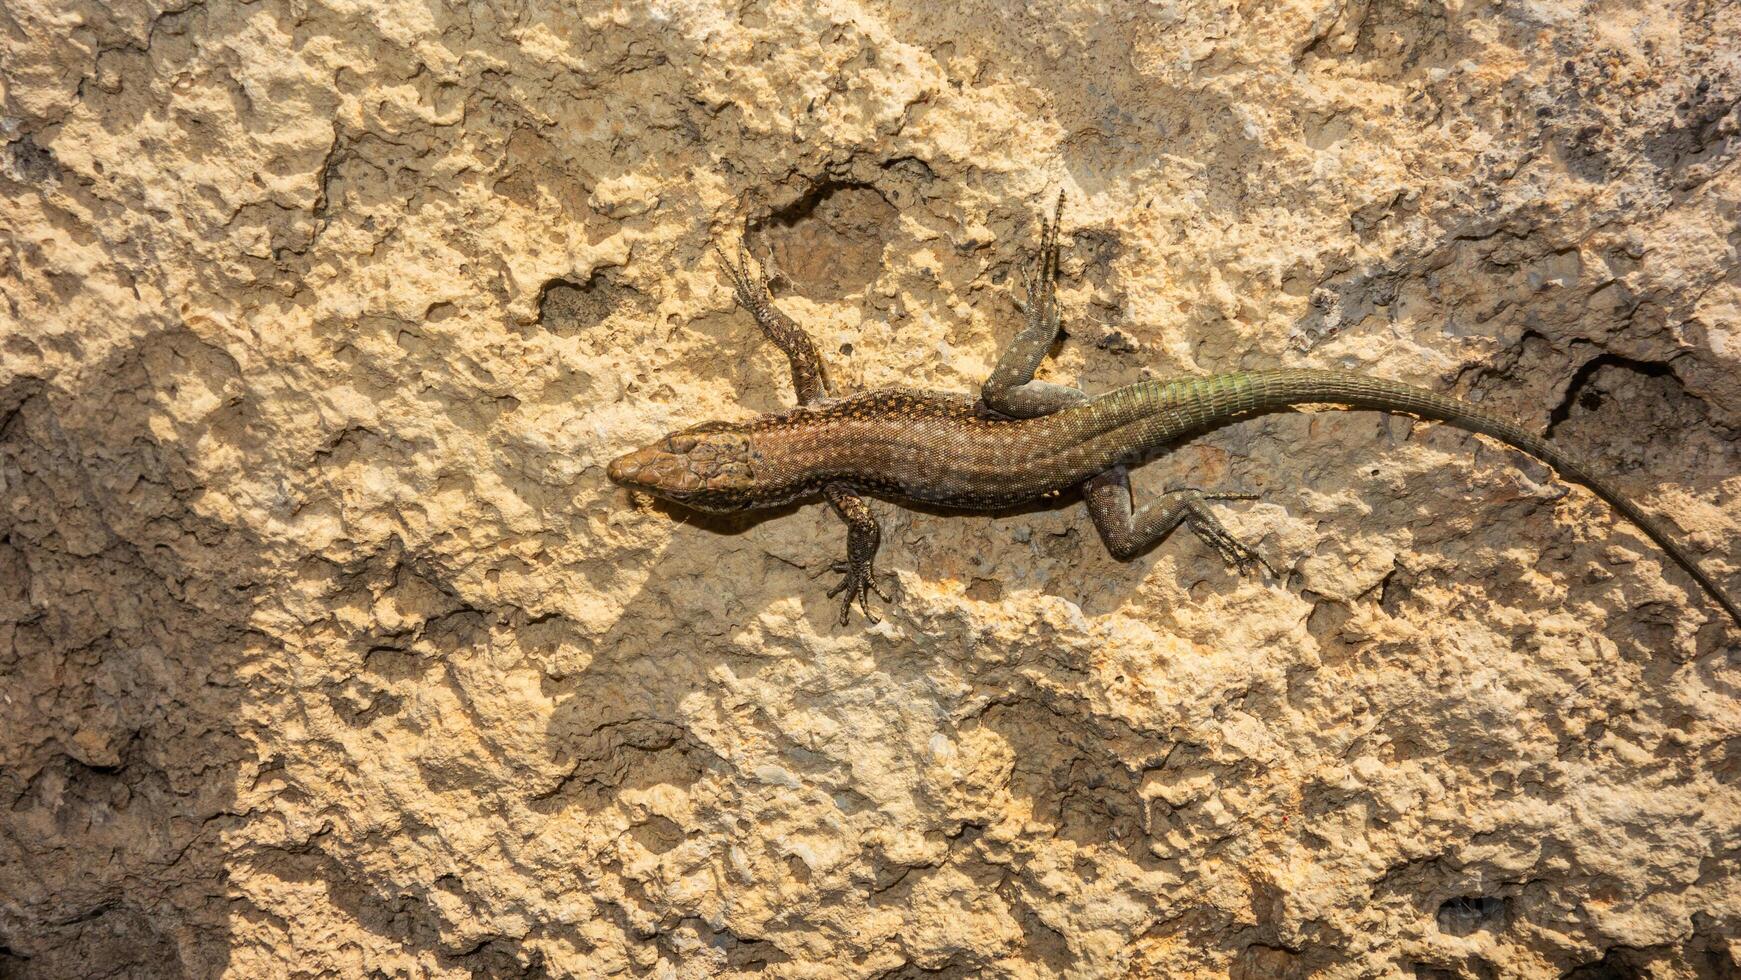 lagartija en el roca, de cerca de un lagarto. foto